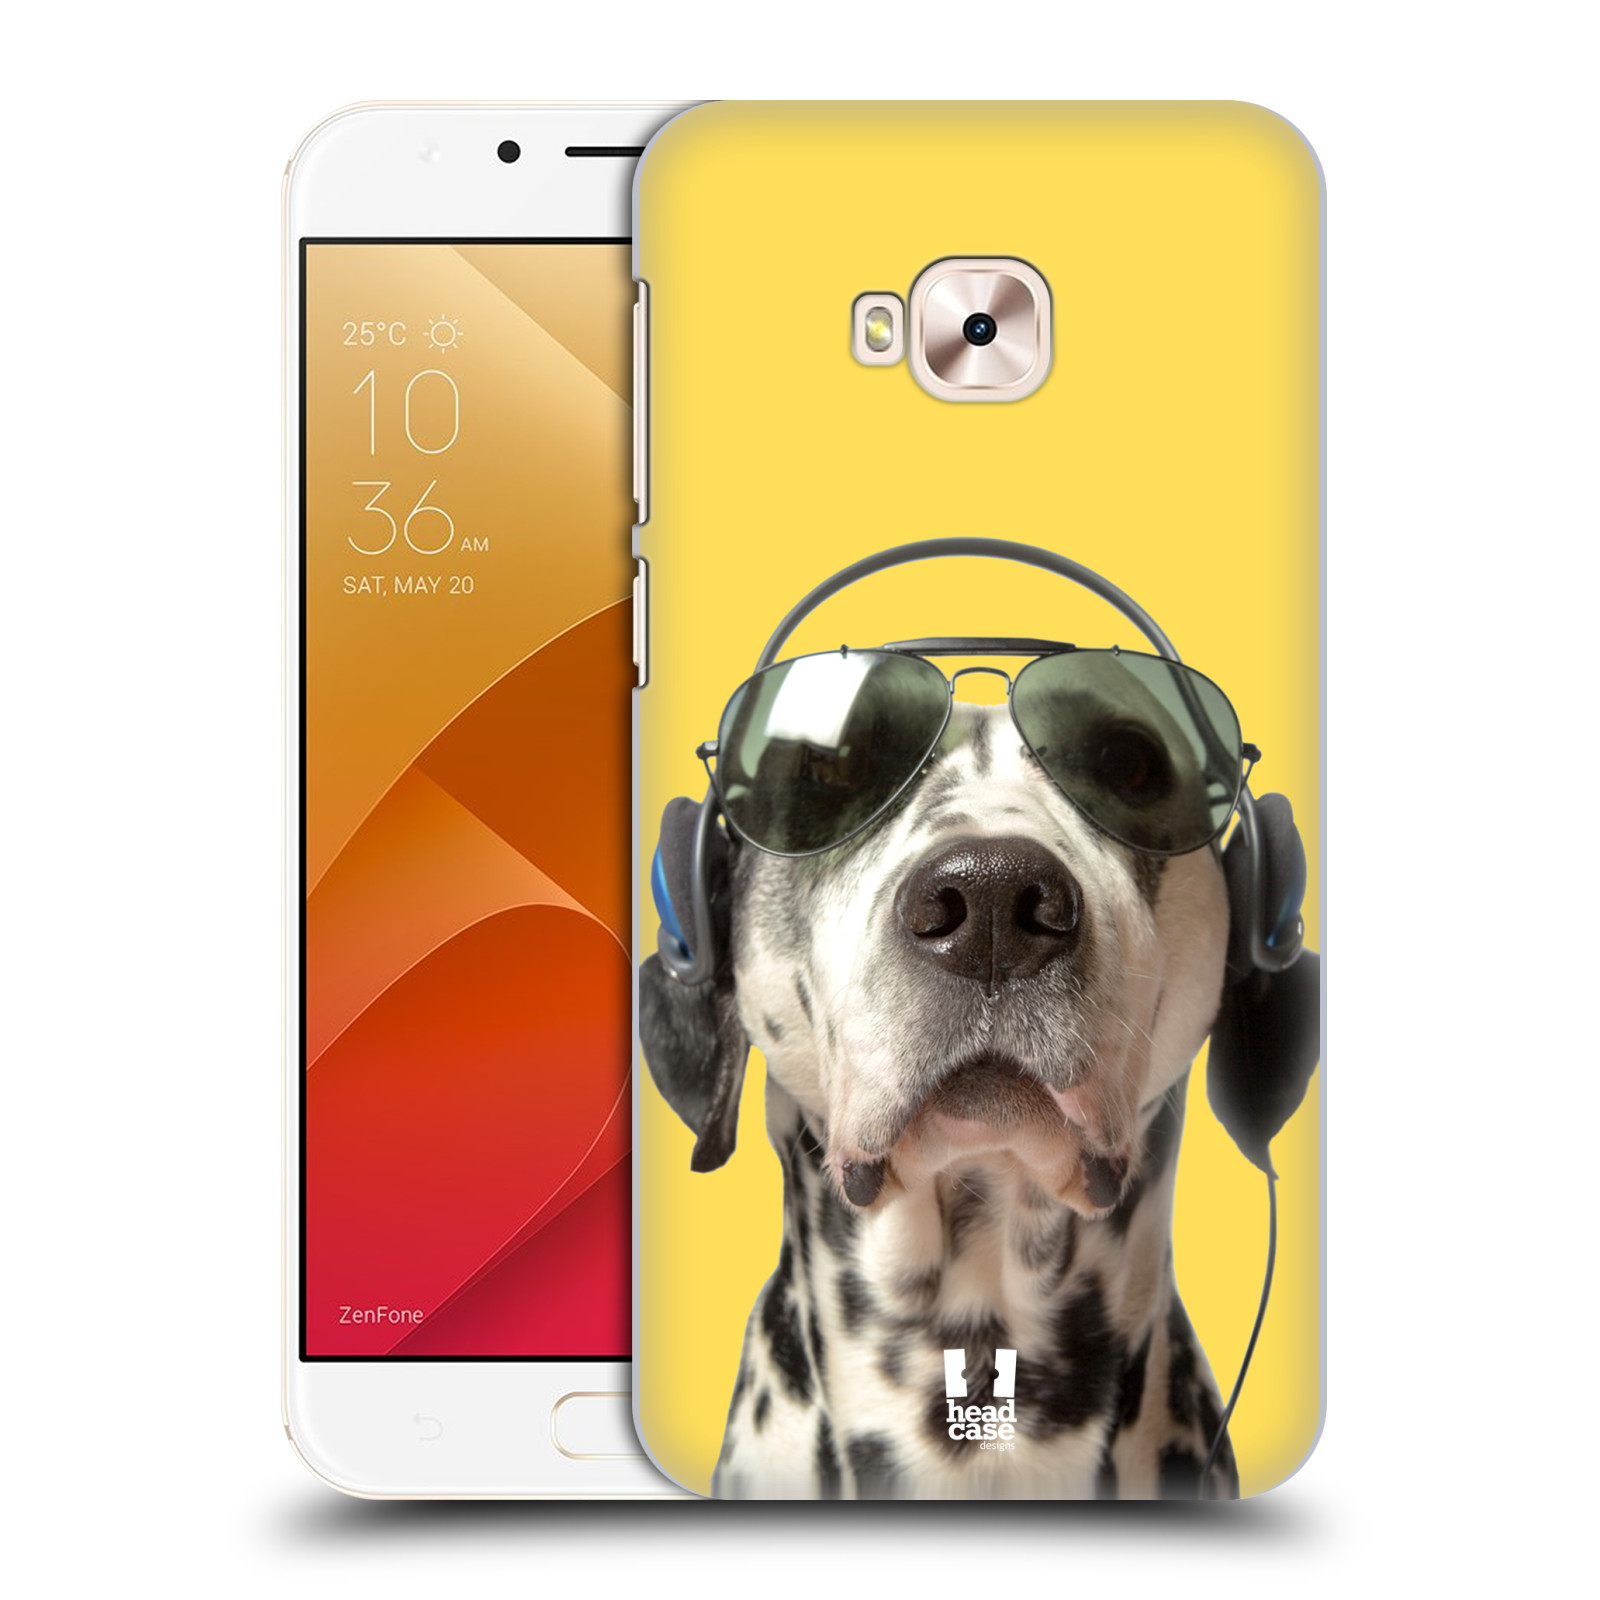 HEAD CASE plastový obal na mobil Asus Zenfone 4 Selfie Pro ZD552KL vzor Legrační zvířátka dalmatin se sluchátky žlutá